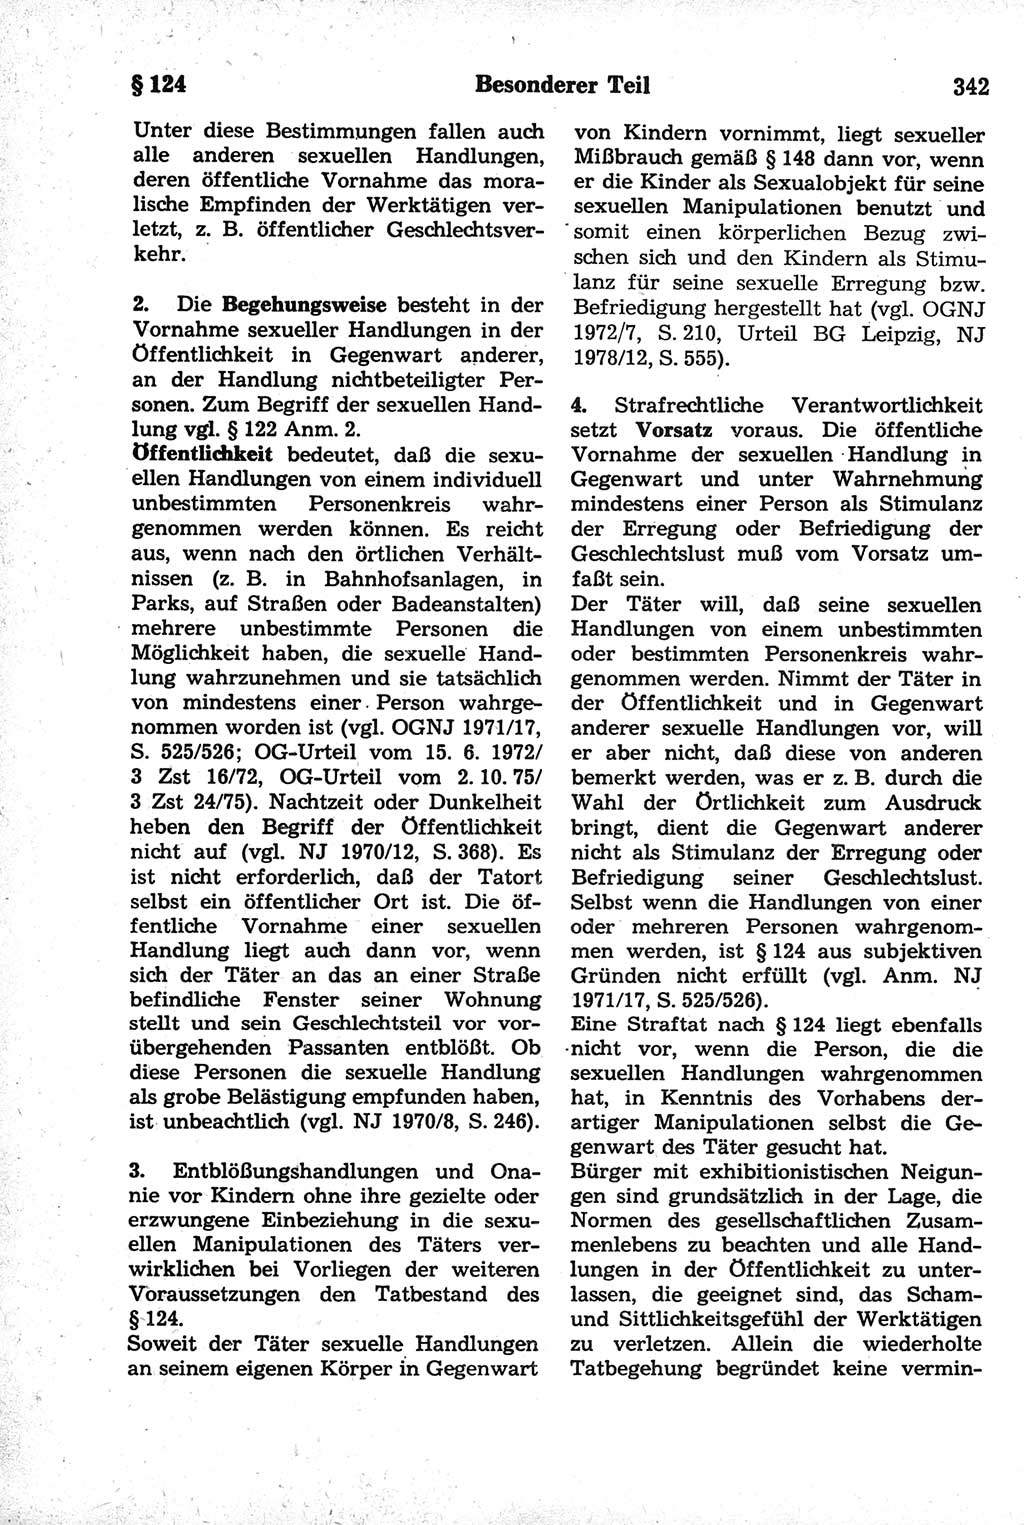 Strafrecht der Deutschen Demokratischen Republik (DDR), Kommentar zum Strafgesetzbuch (StGB) 1981, Seite 342 (Strafr. DDR Komm. StGB 1981, S. 342)